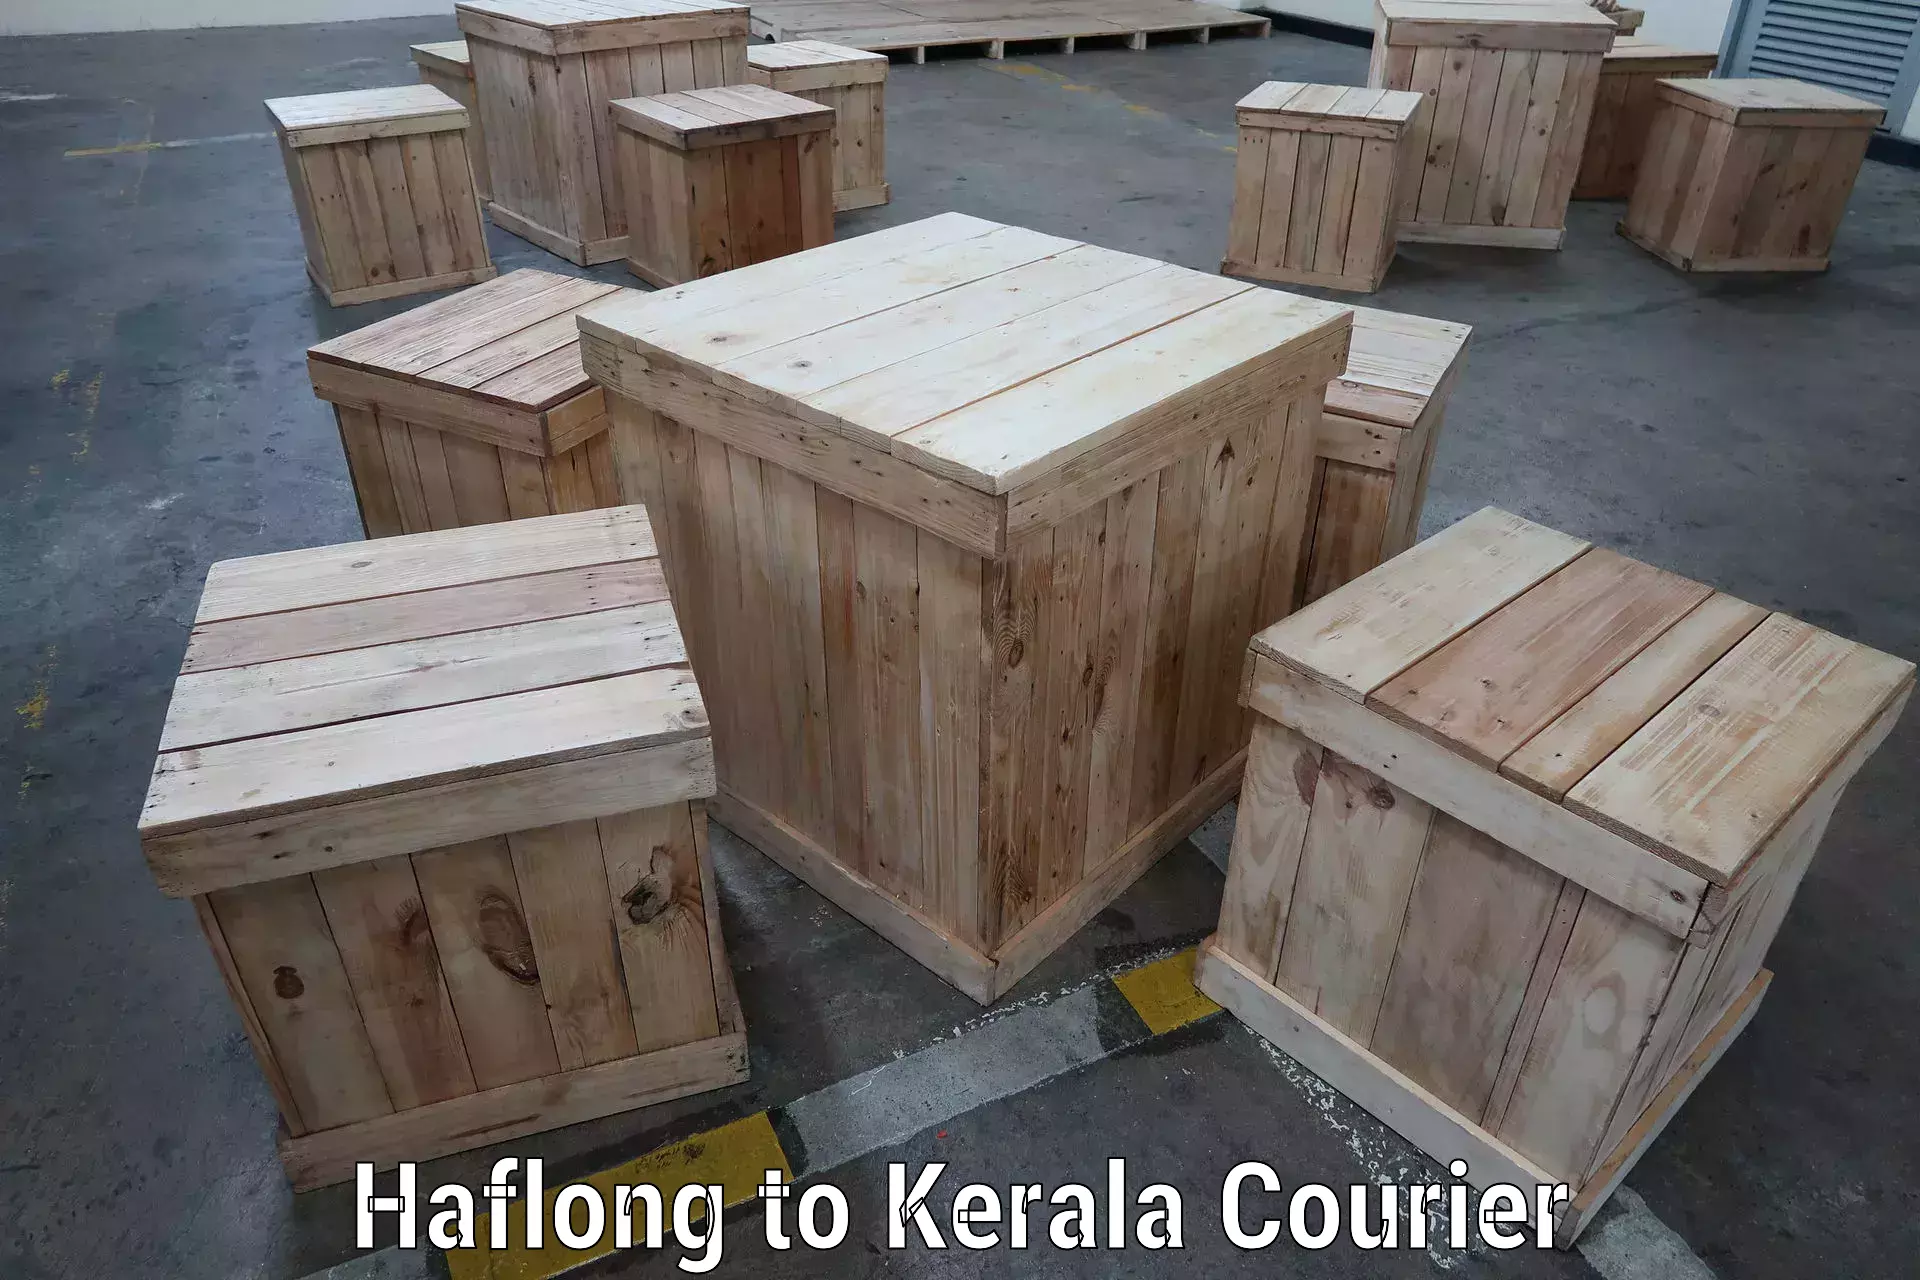 Nationwide shipping capabilities Haflong to Cochin Port Kochi